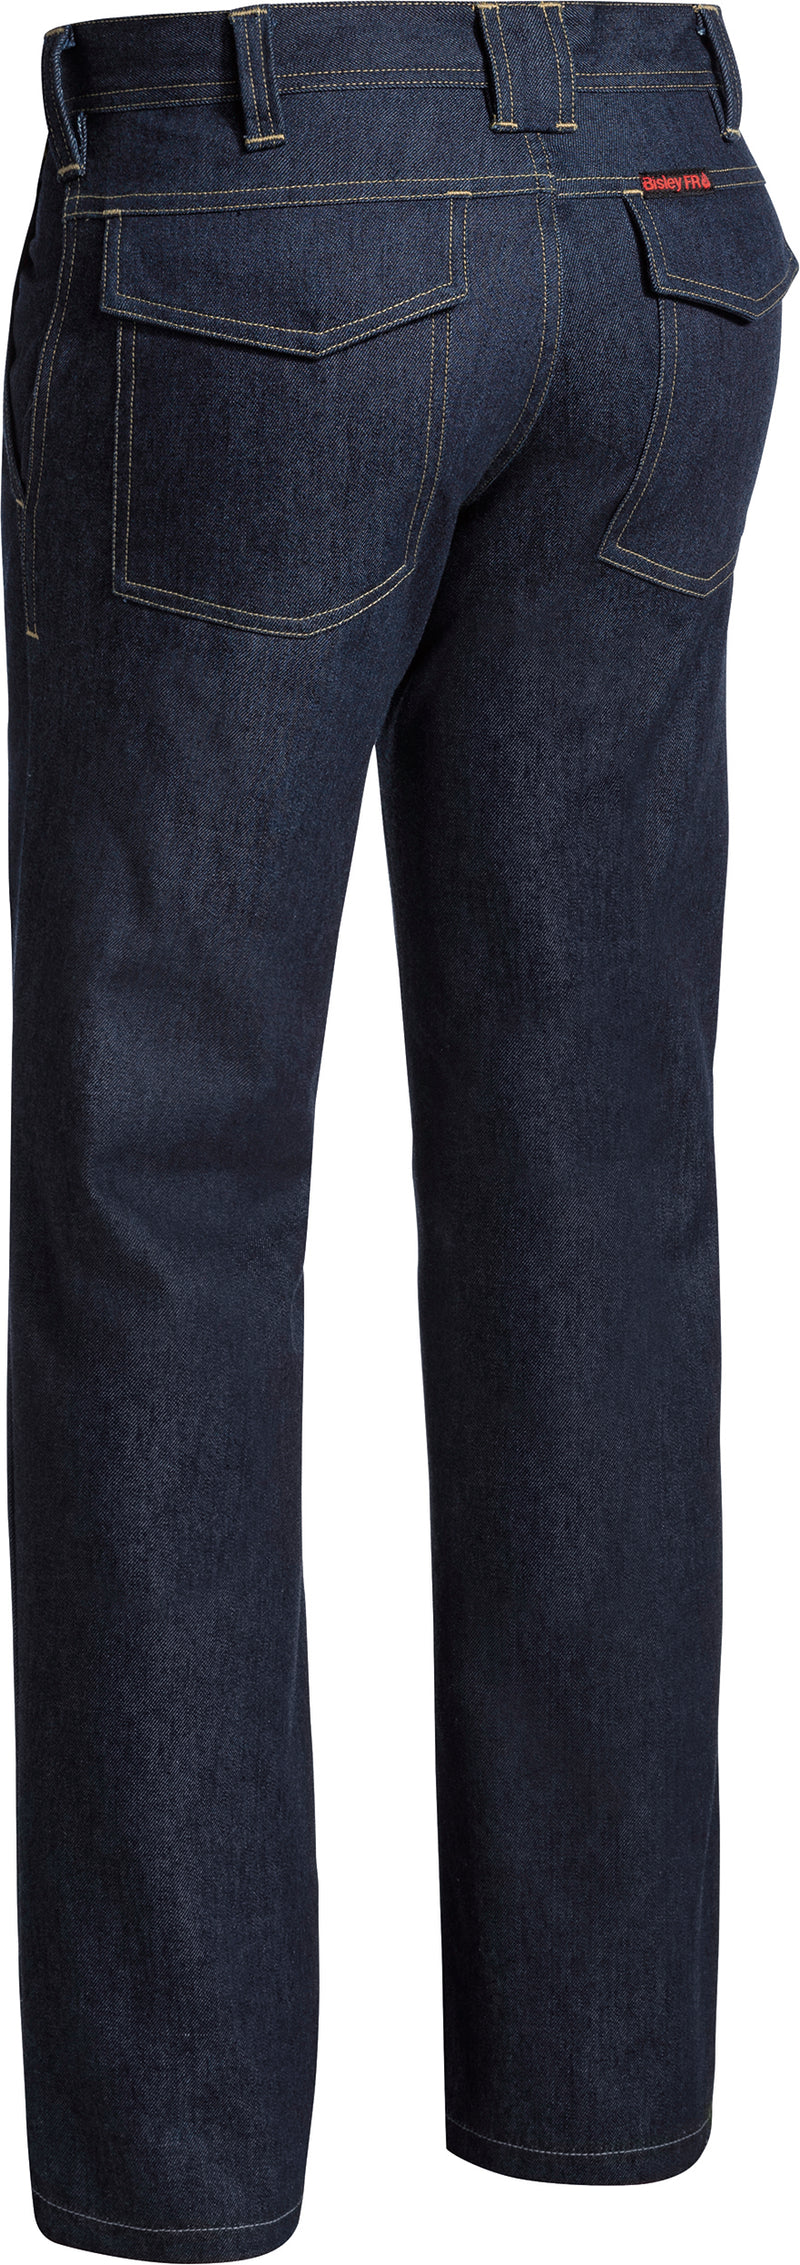 Load image into Gallery viewer, Wholesale BP8091 Bisley FR Denim Jeans - Regular Printed or Blank
